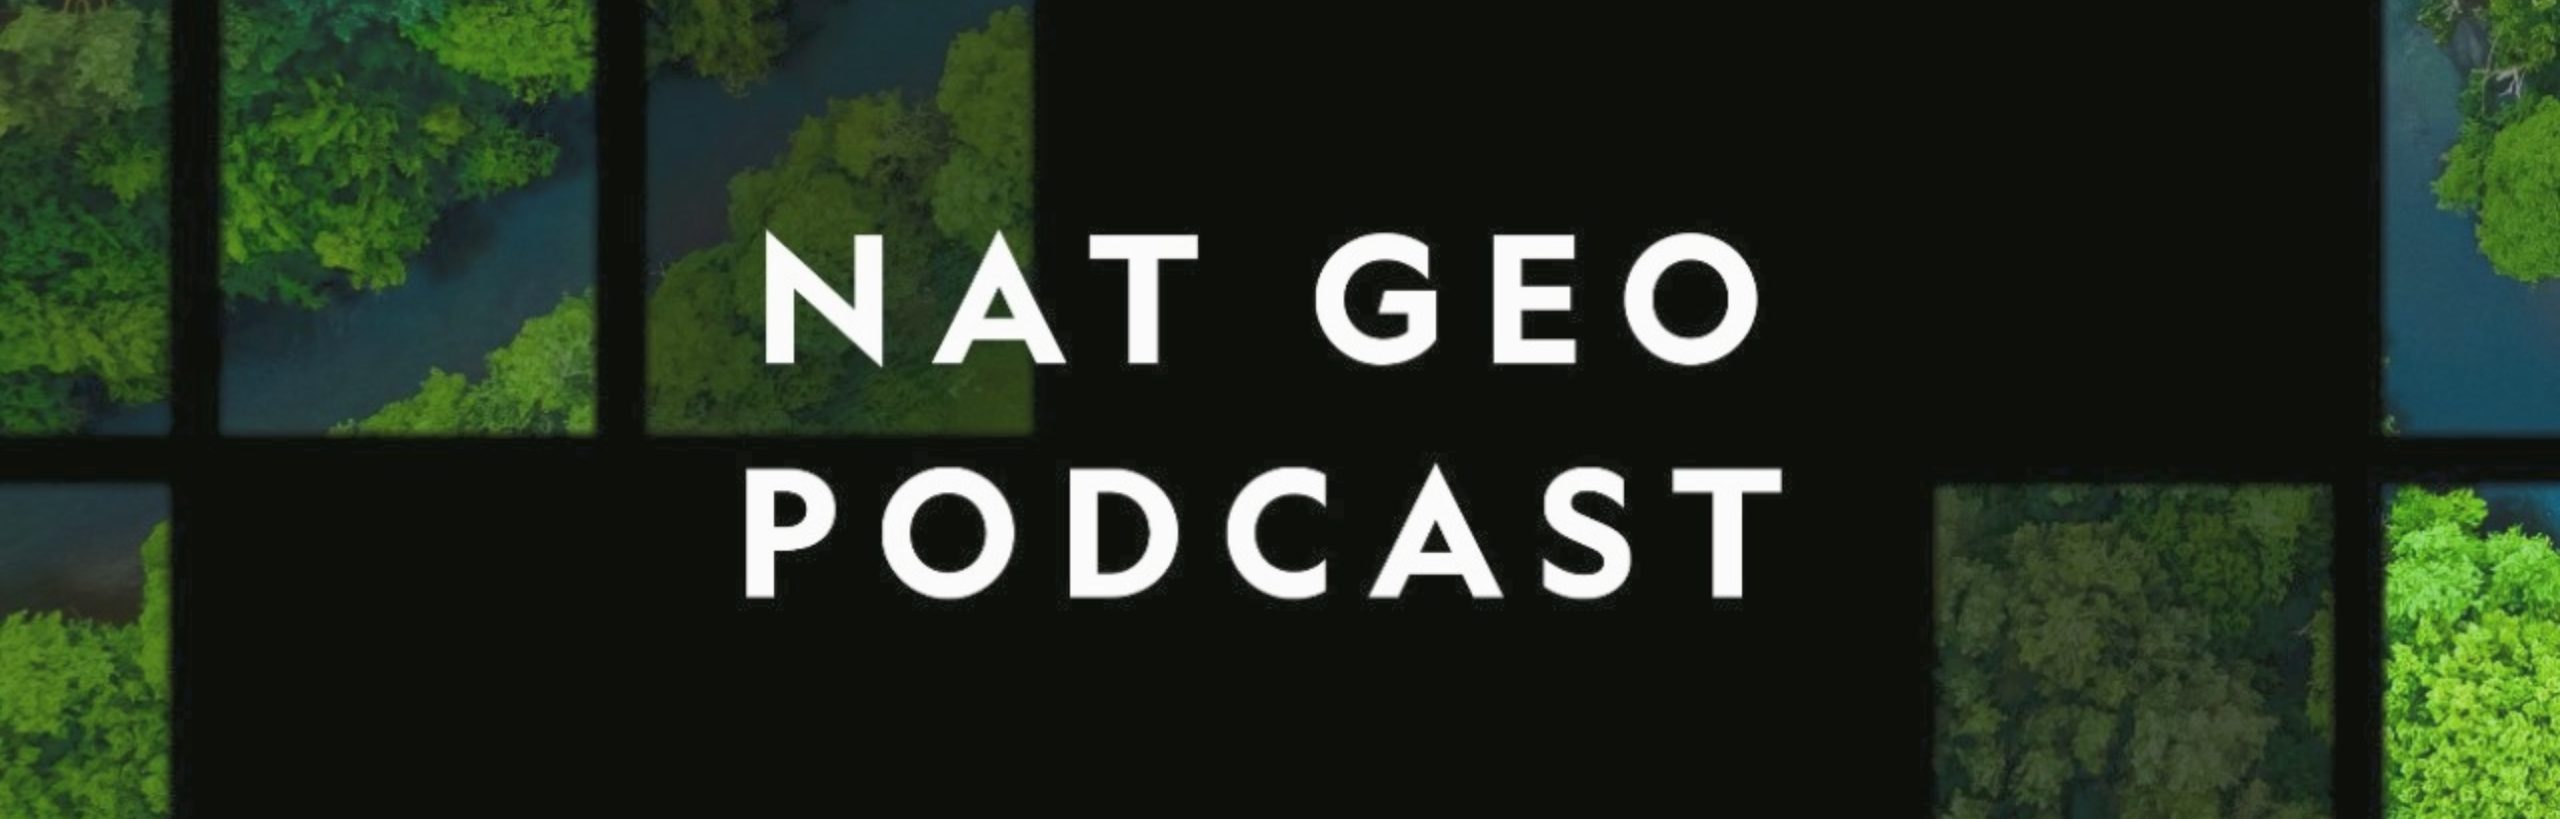 Nat Geo Podcast já conta com episódios disponíveis